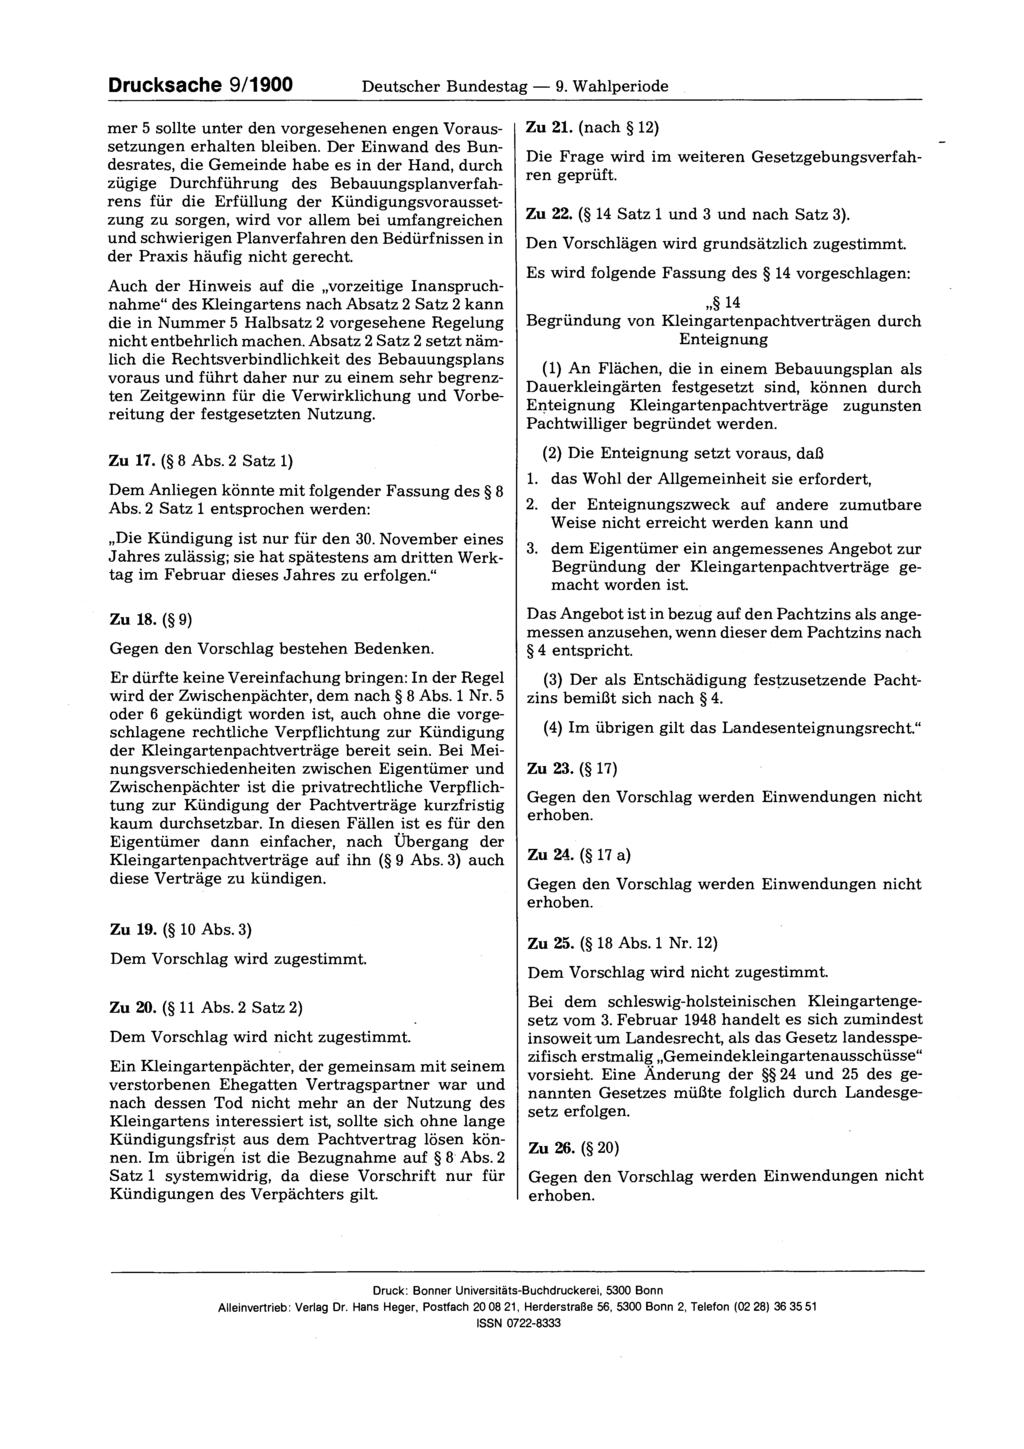 Drucksache 9/1900 Deutscher Bundestag 9. Wahlperiode mer 5 sollte unter den vorgesehenen engen Voraussetzungen erhalten bleiben.